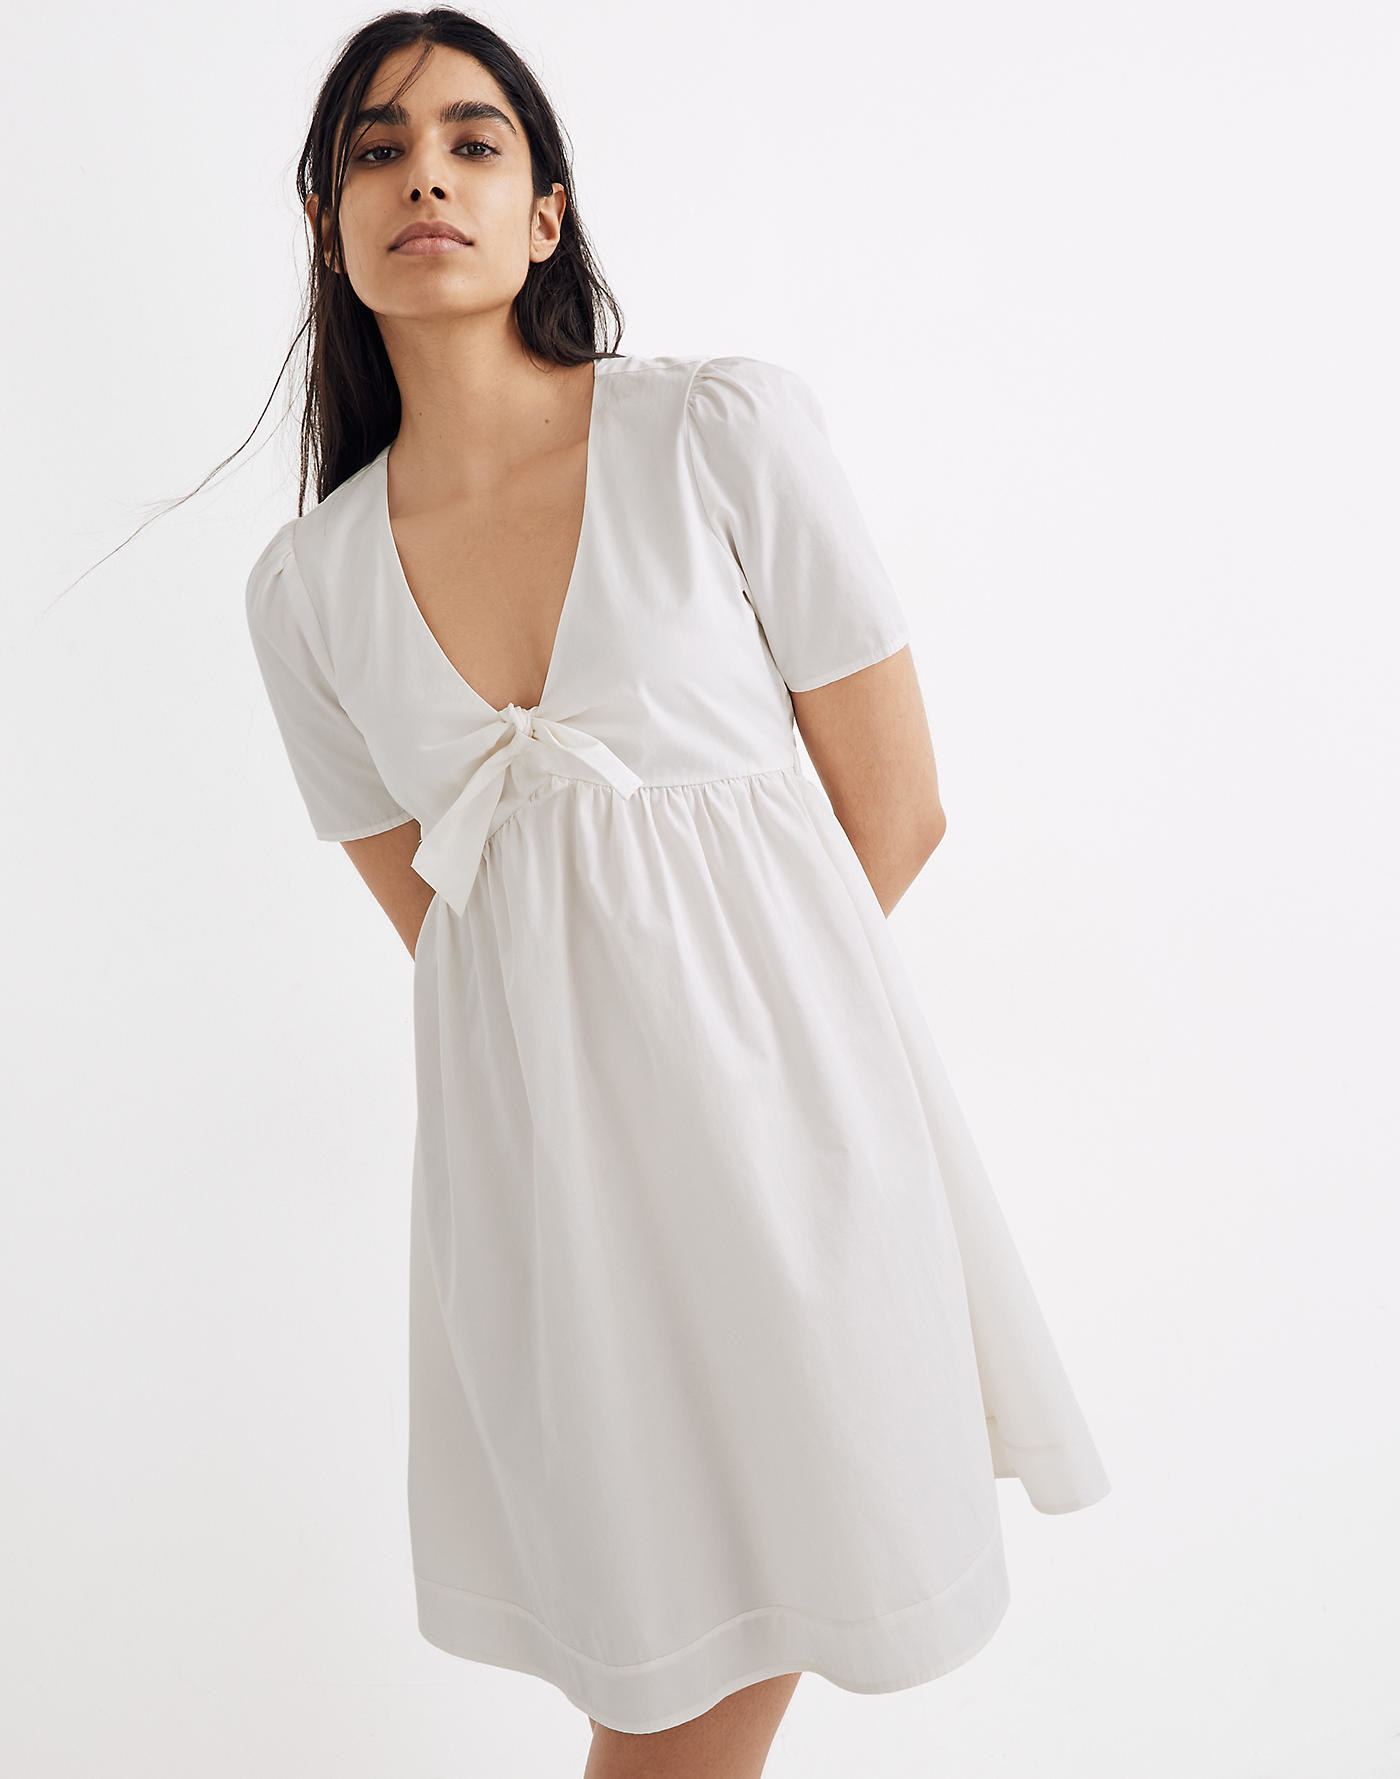 model wearing white V-neck mini dress